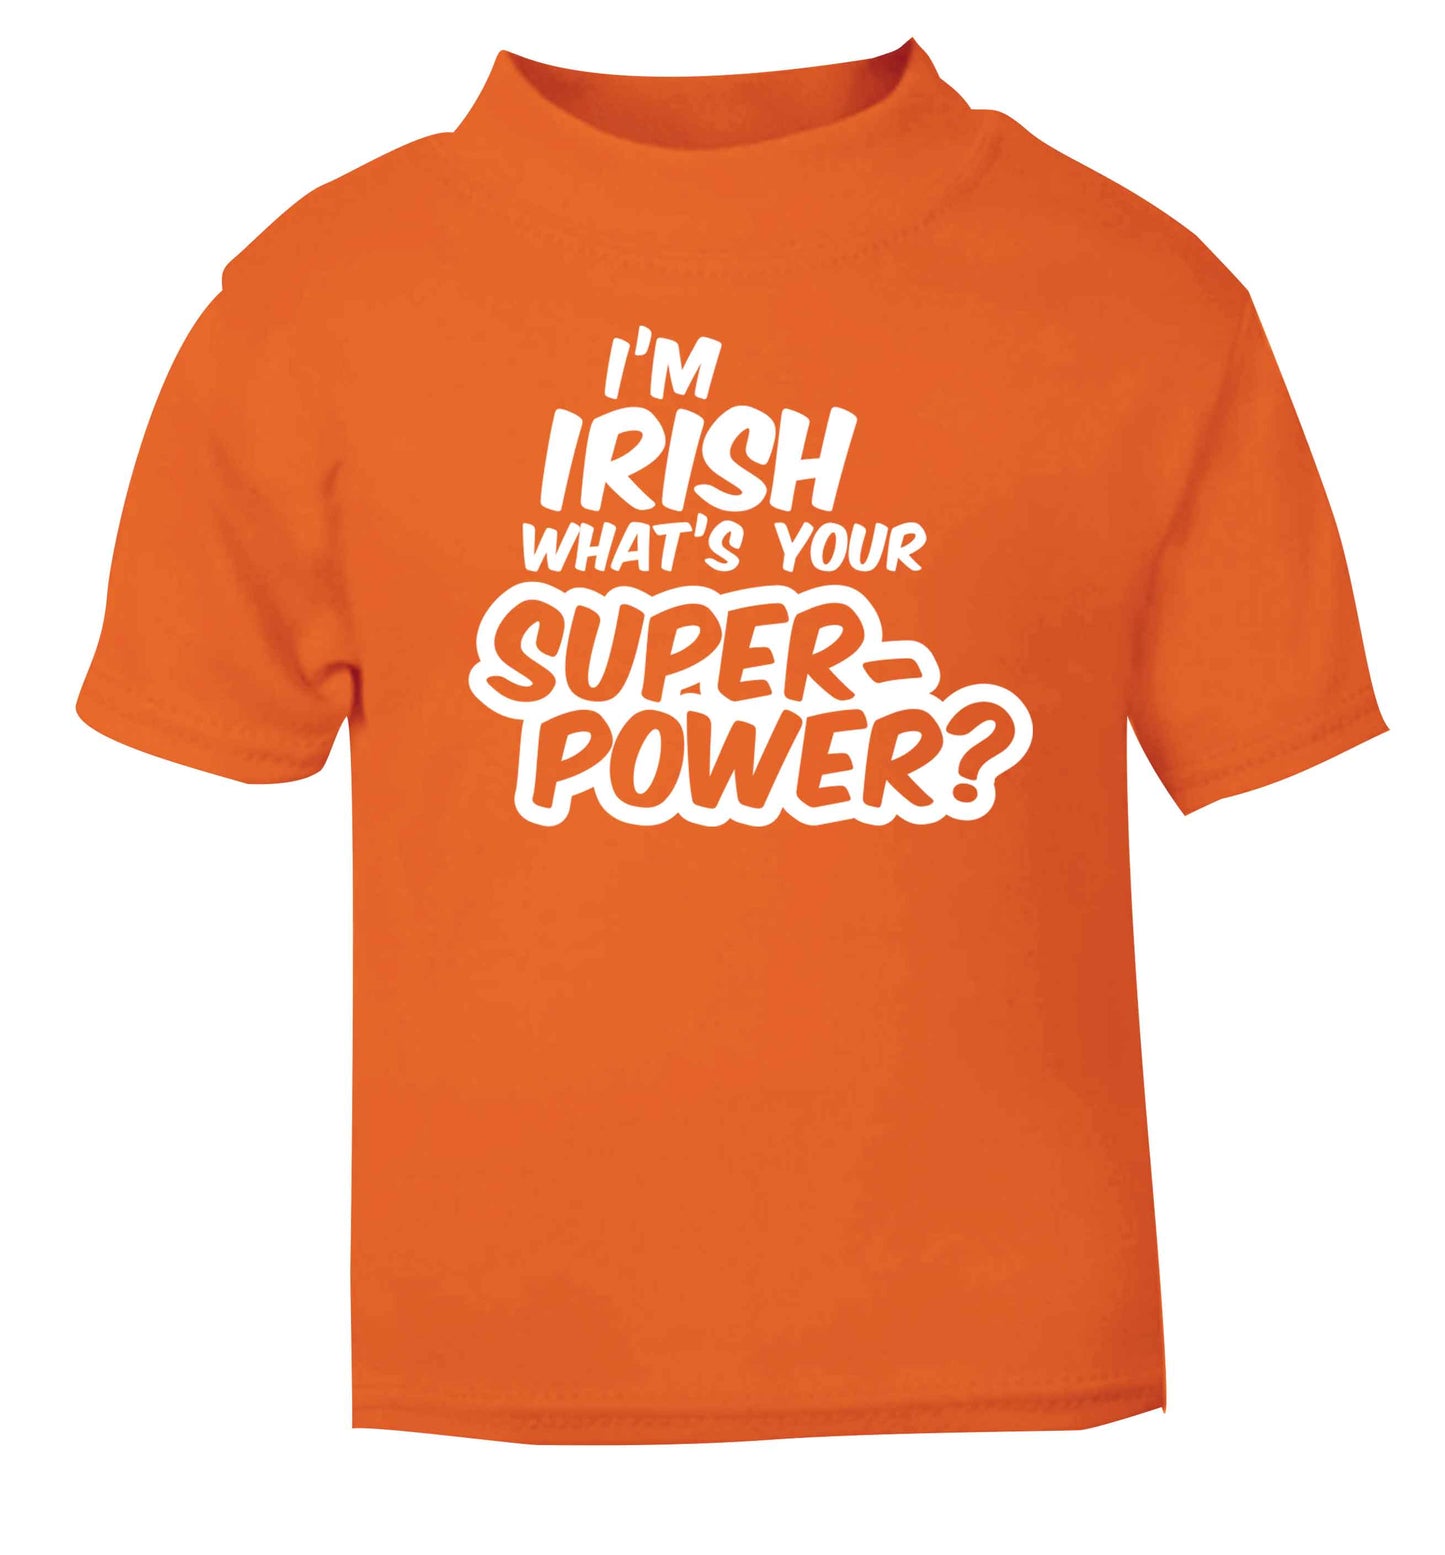 I'm Irish what's your superpower? orange baby toddler Tshirt 2 Years